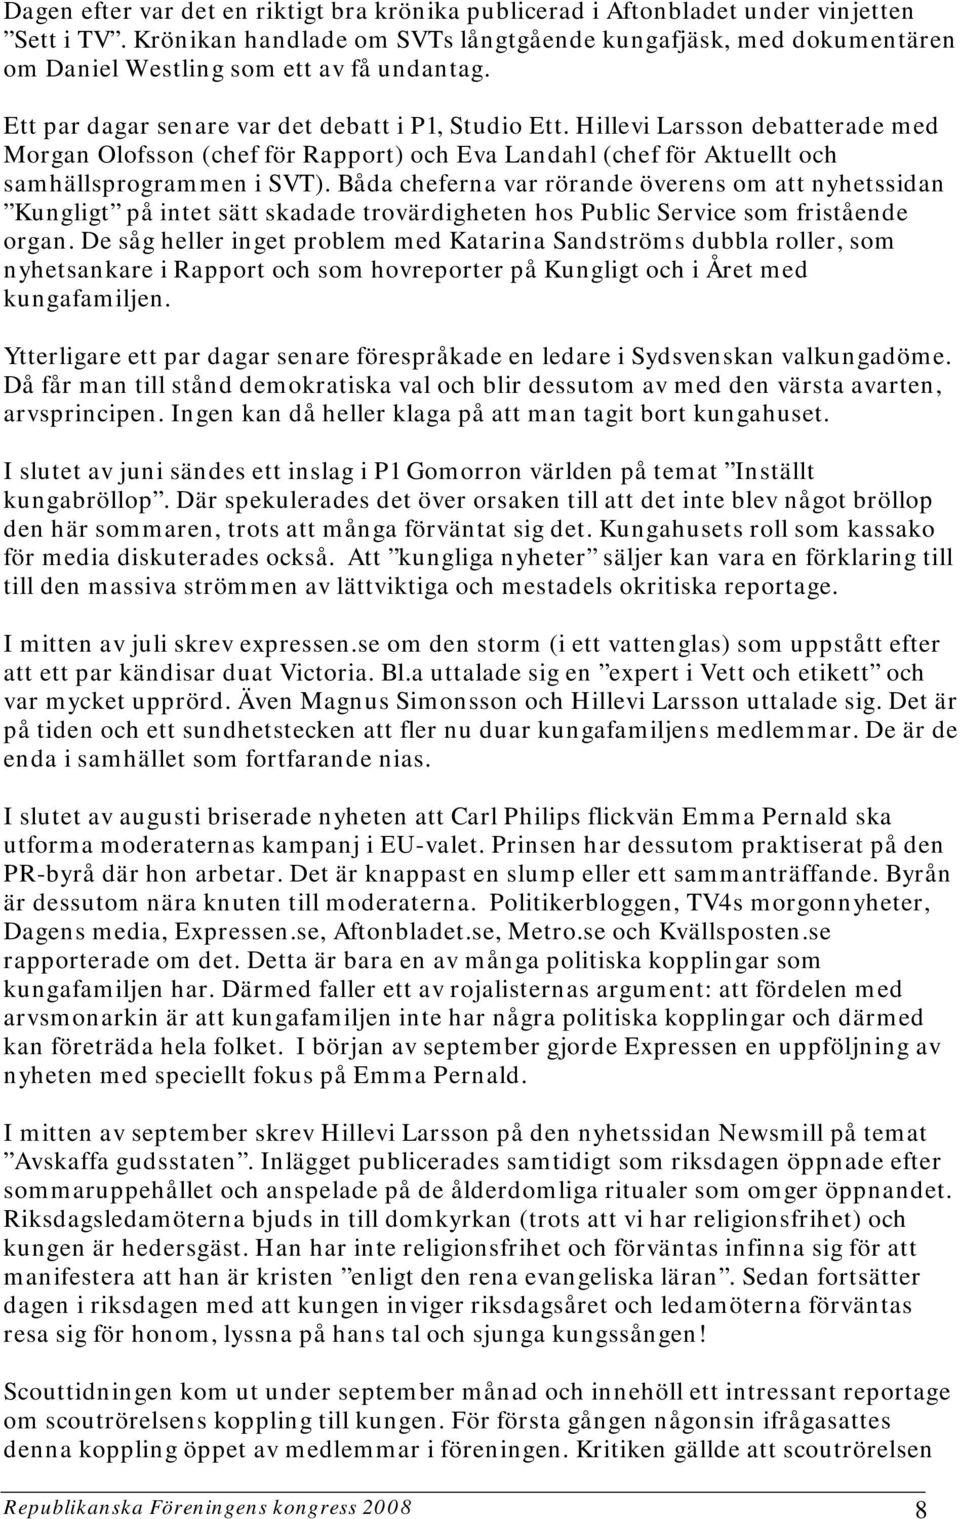 Hillevi Larsson debatterade med Morgan Olofsson (chef för Rapport) och Eva Landahl (chef för Aktuellt och samhällsprogrammen i SVT).